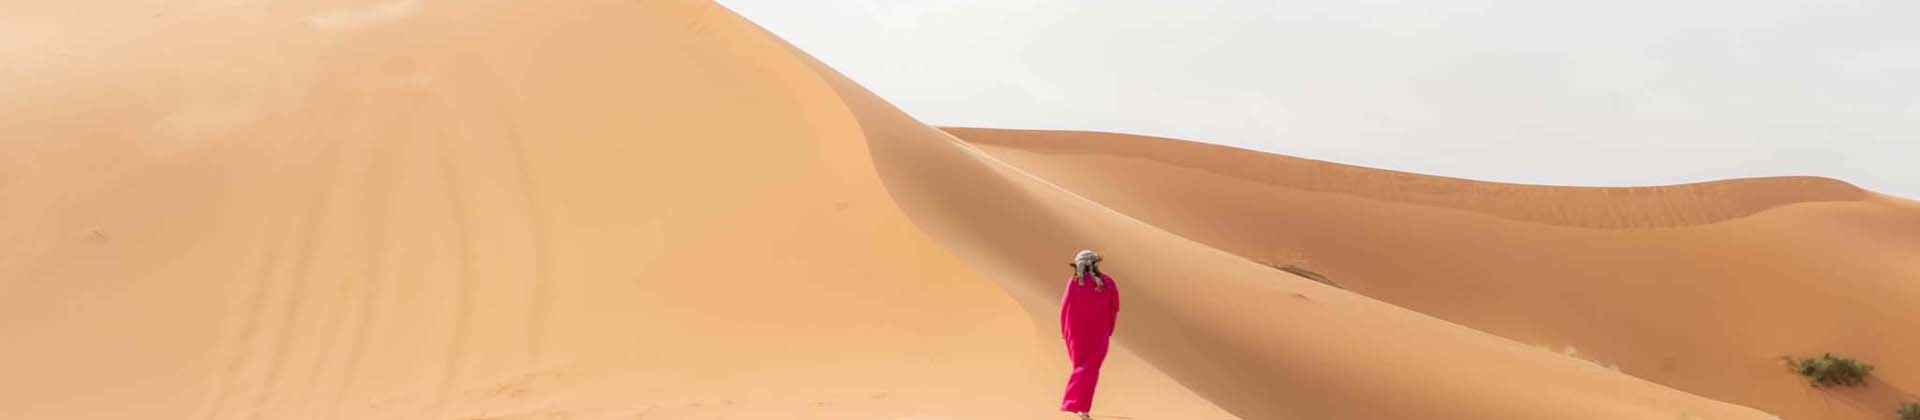 カテゴリー: 砂漠ツアー